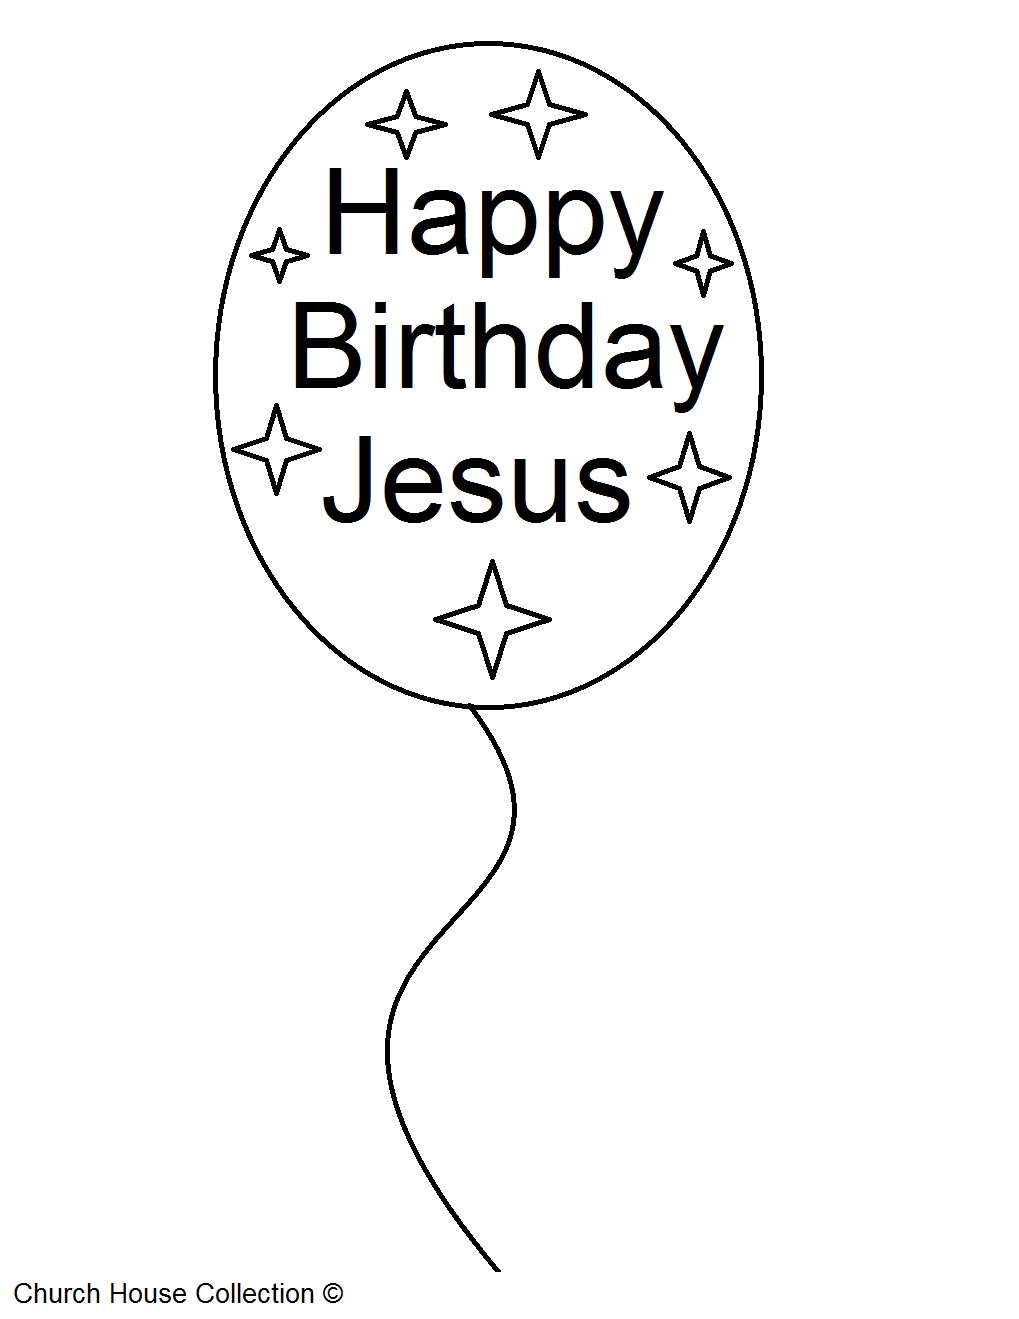 clipart name happy birthday jesus - photo #36